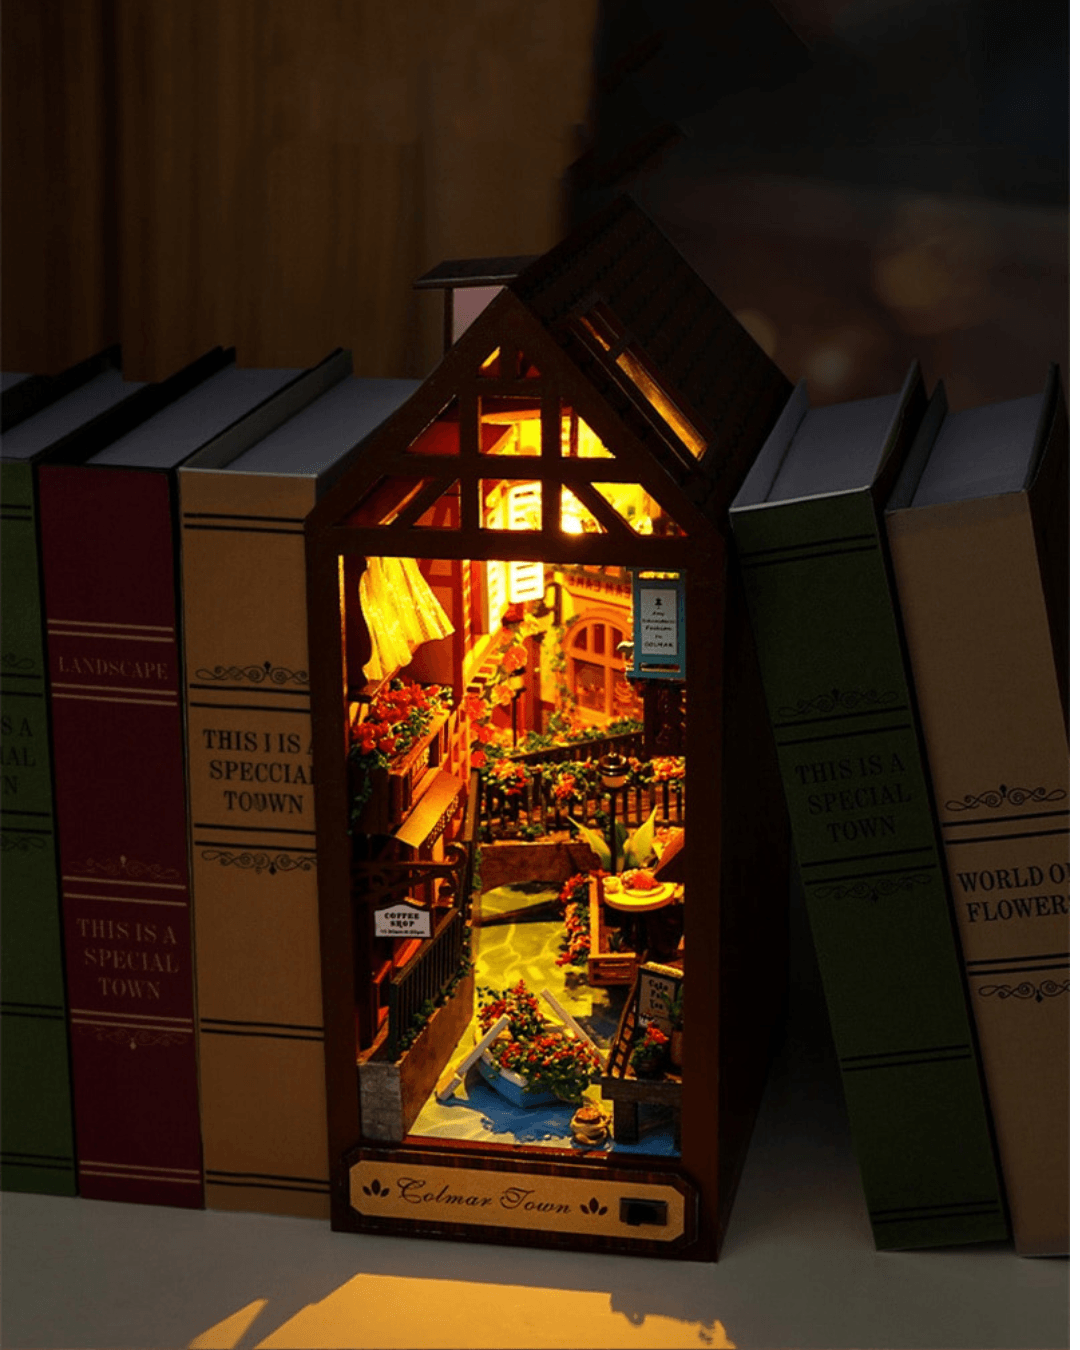 Colmar Town DIY Book Nook - DIYative™